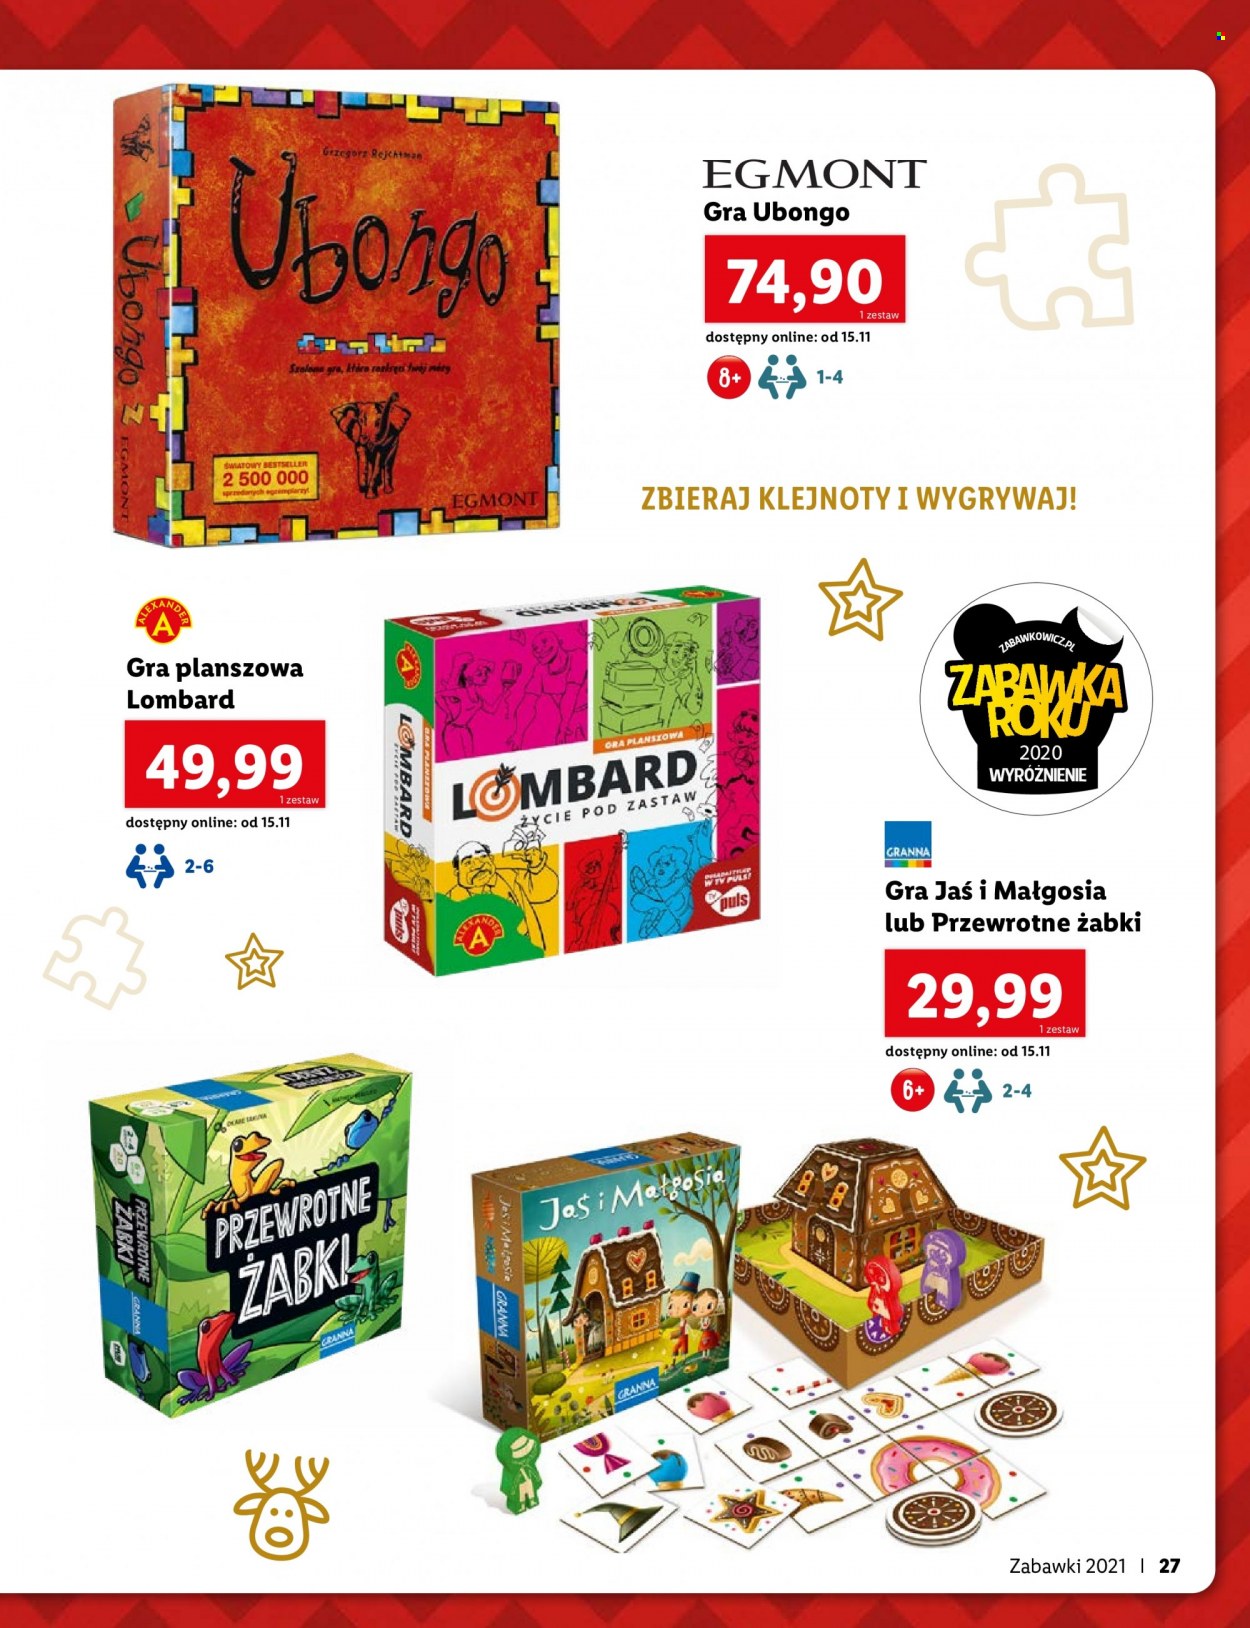 Gazetka Lidl - Produkty w akcji - Egmont, zabawka, gra, Ubongo. Strona 27.